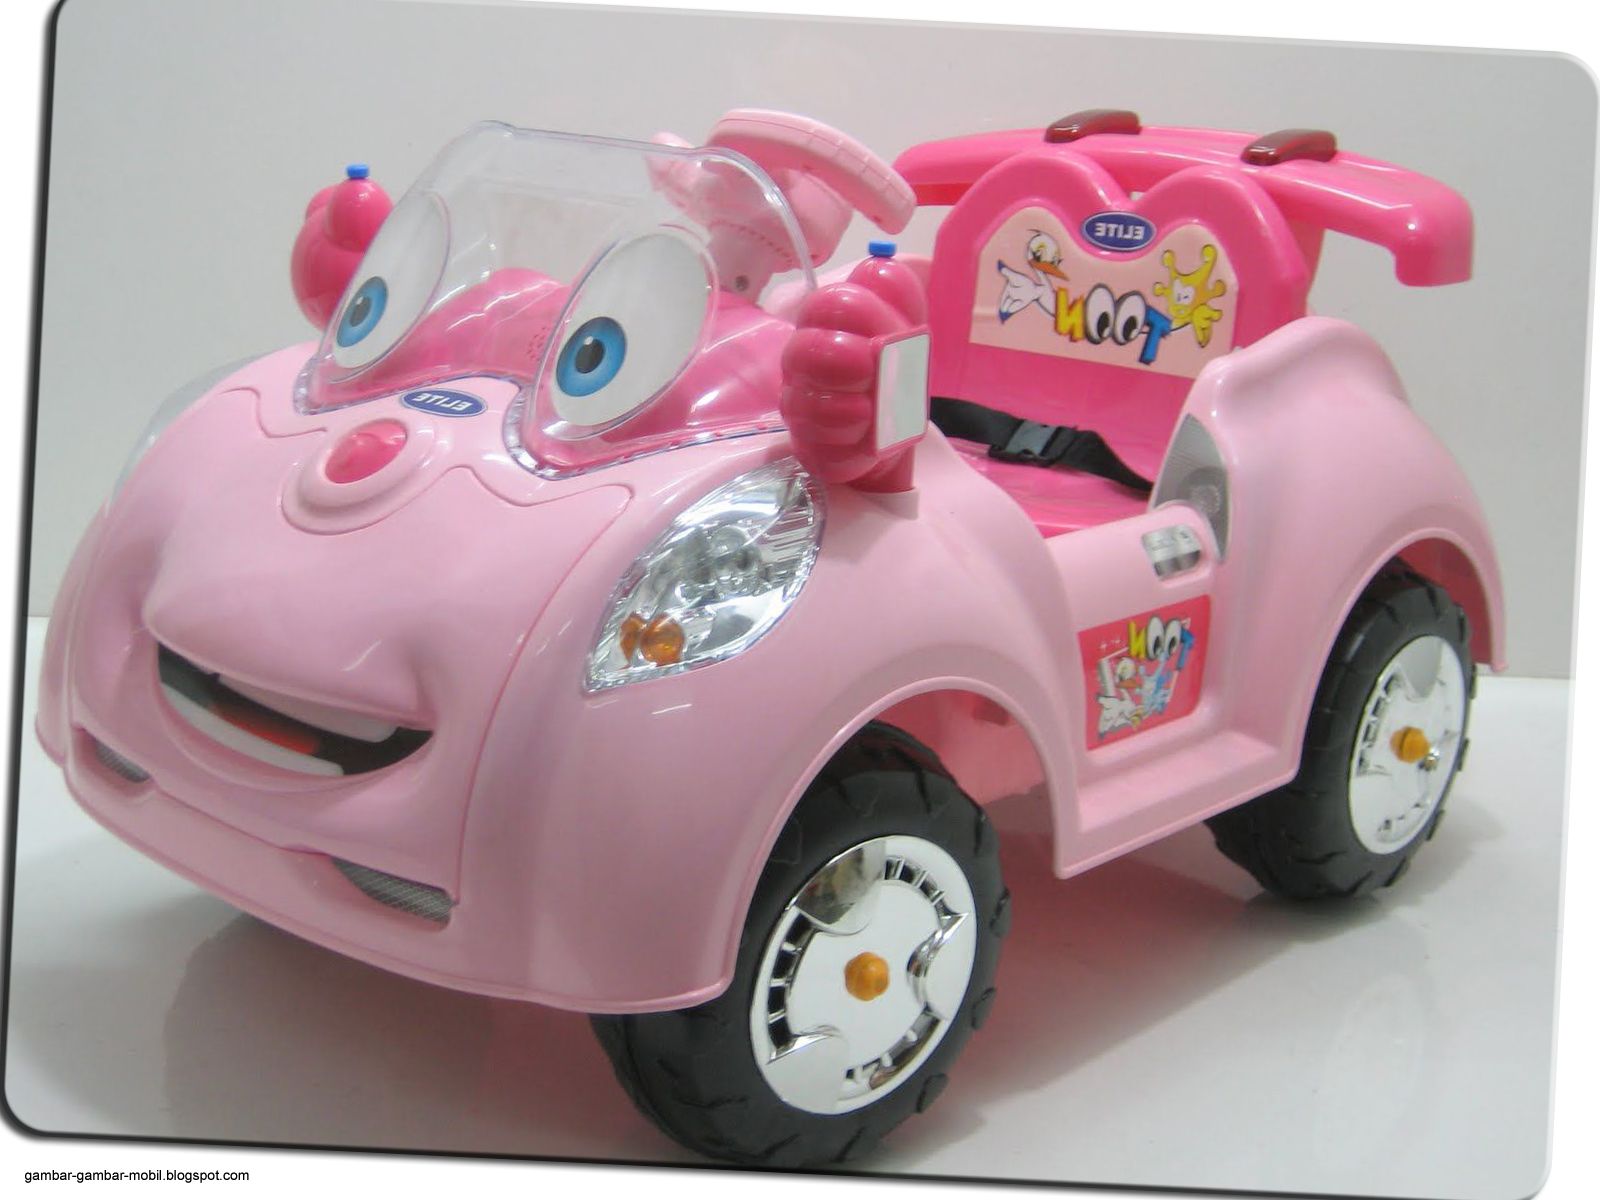 Mobil Mainan  Anak  Yang  Bisa  Dinaiki  Gambar Gambar Mobil